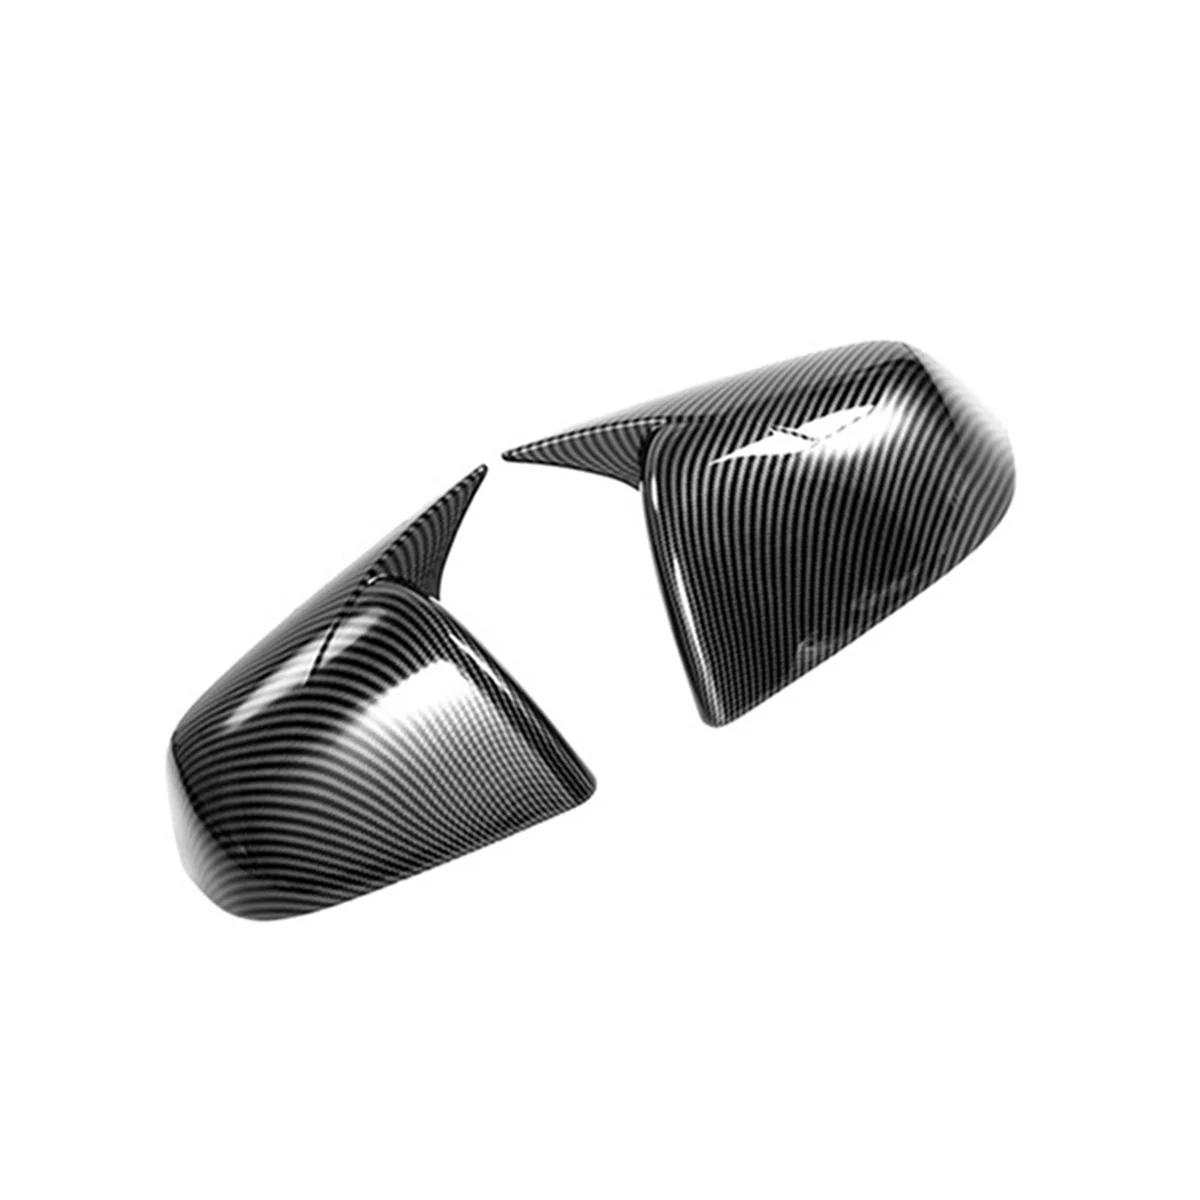 

Car Carbon Fiber Stripes Horn Rearview Mirror Cover Side Trim for Tesla Model Y 2020-2022